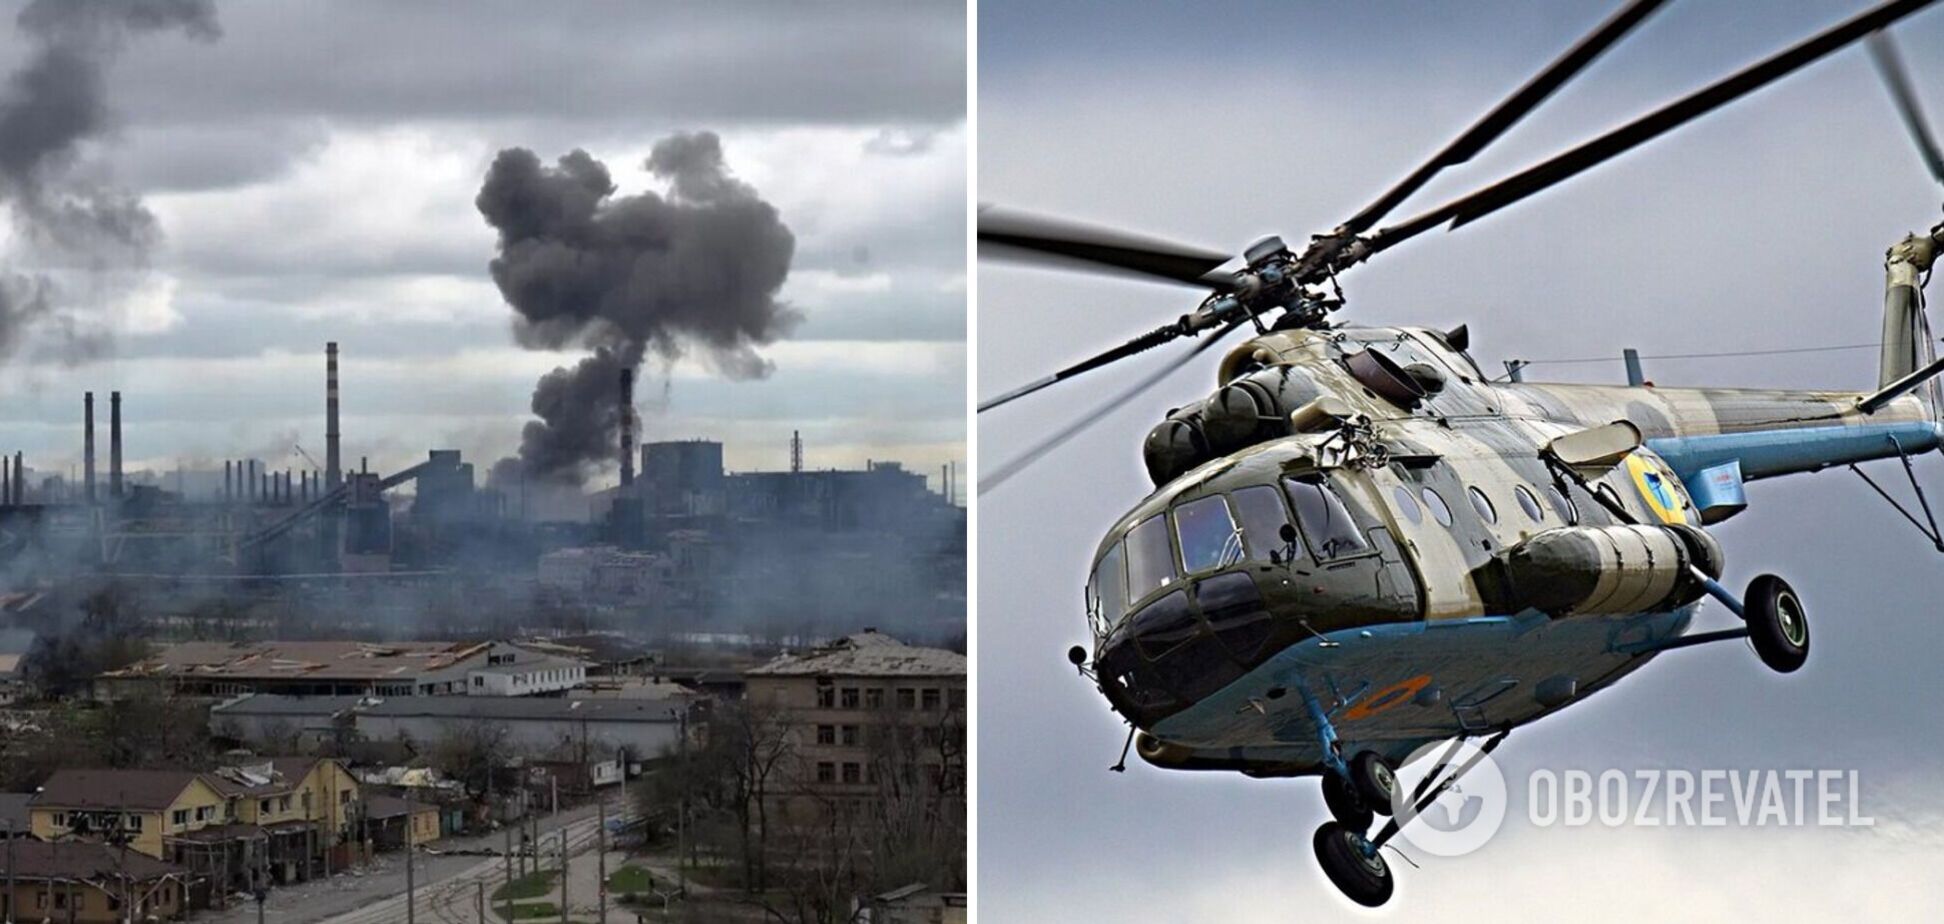 Во время авиапрорыва блокады Мариуполя ВСУ потеряли три вертолета